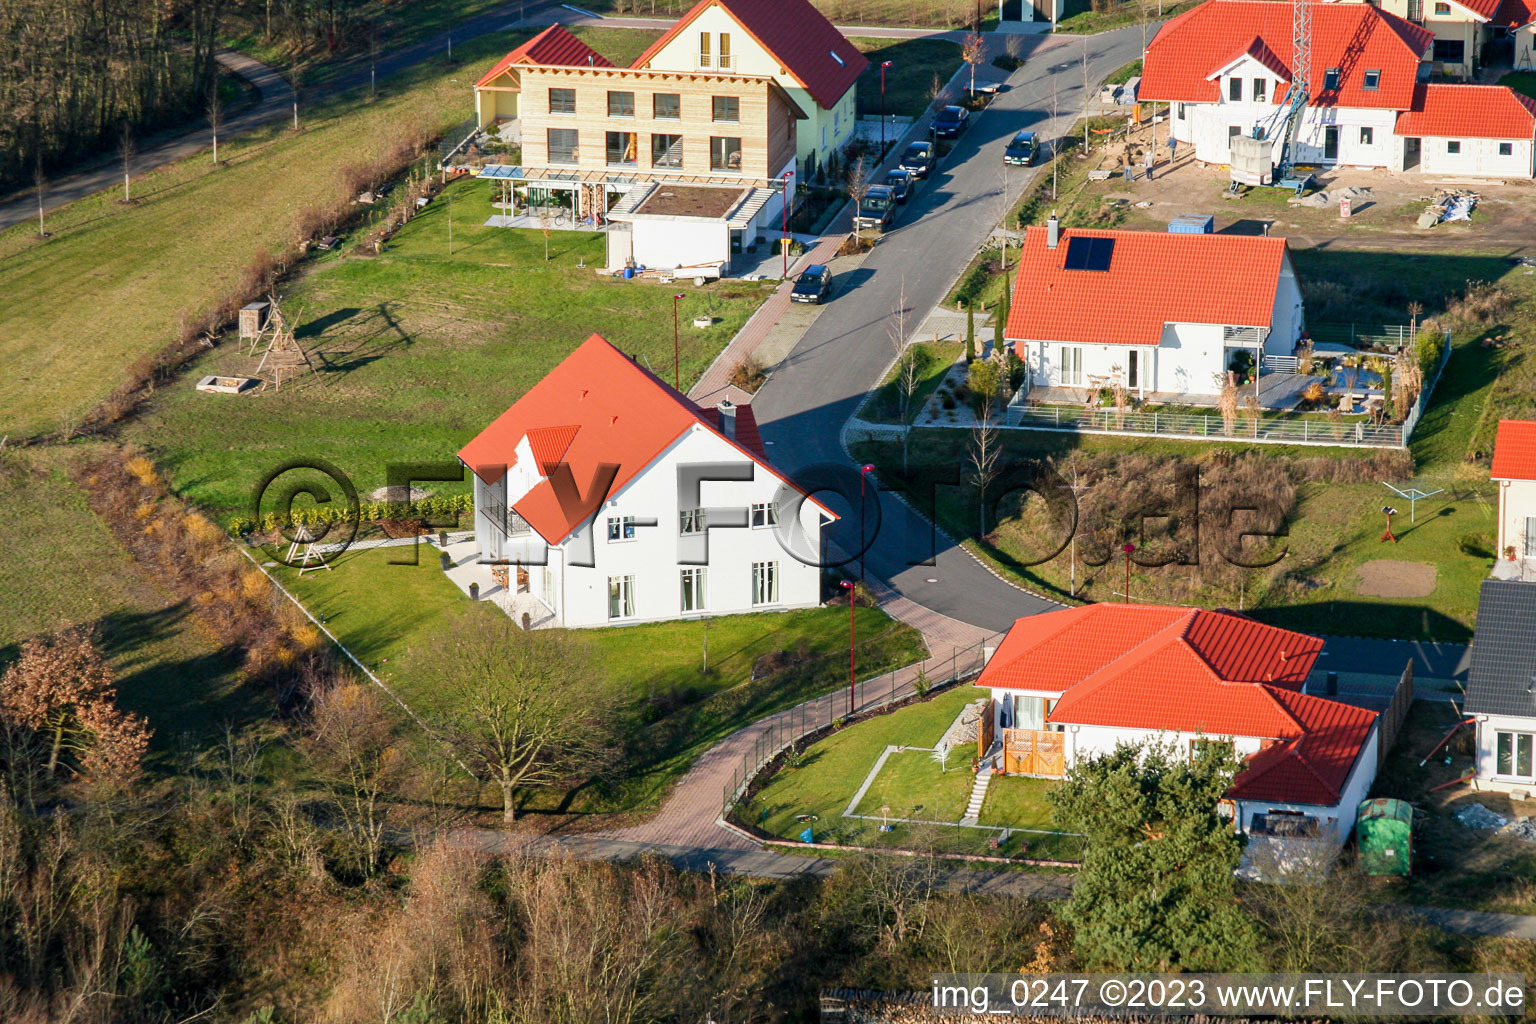 Rheinzabern Neubaugebiet An den Tongruben im Bundesland Rheinland-Pfalz, Deutschland aus der Luft betrachtet